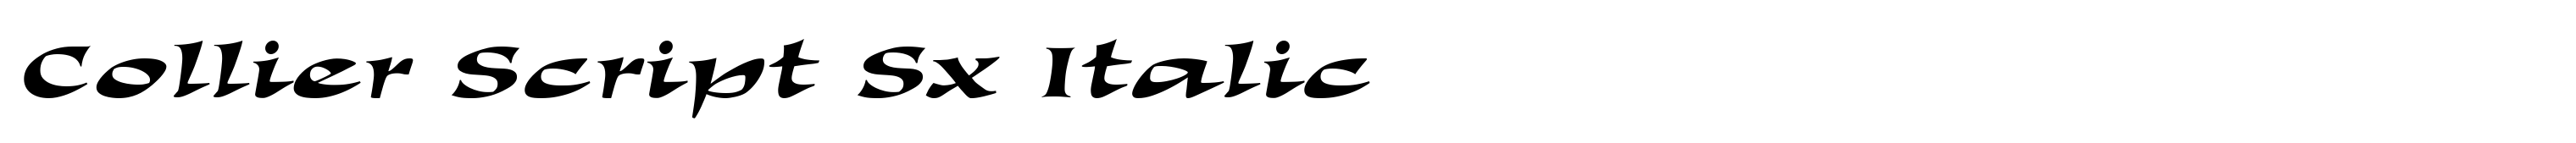 Collier Script Sx Italic